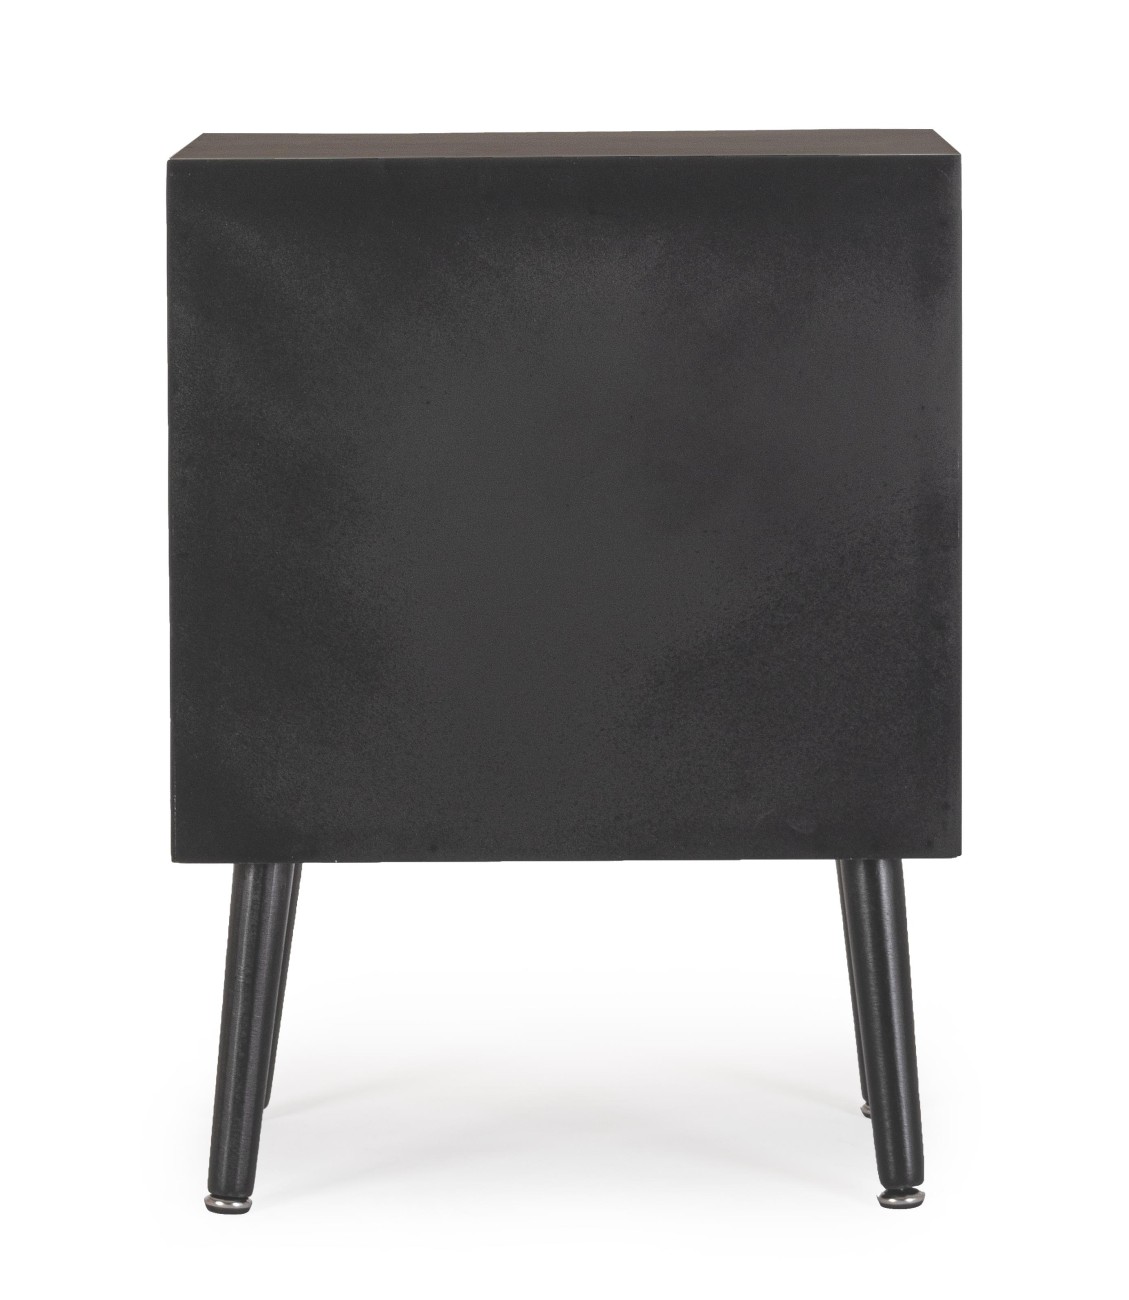 Der Nachttisch Josine überzeugt mit seinem modernen Design. Gefertigt wurde er aus Kiefernholz, welches einen schwarzen Farbton besitzt. Die Einsätze der Türen sind aus Rattan und haben eine natürliche Farbe. Der Nachttisch besitzt eine Breite von 45 cm.